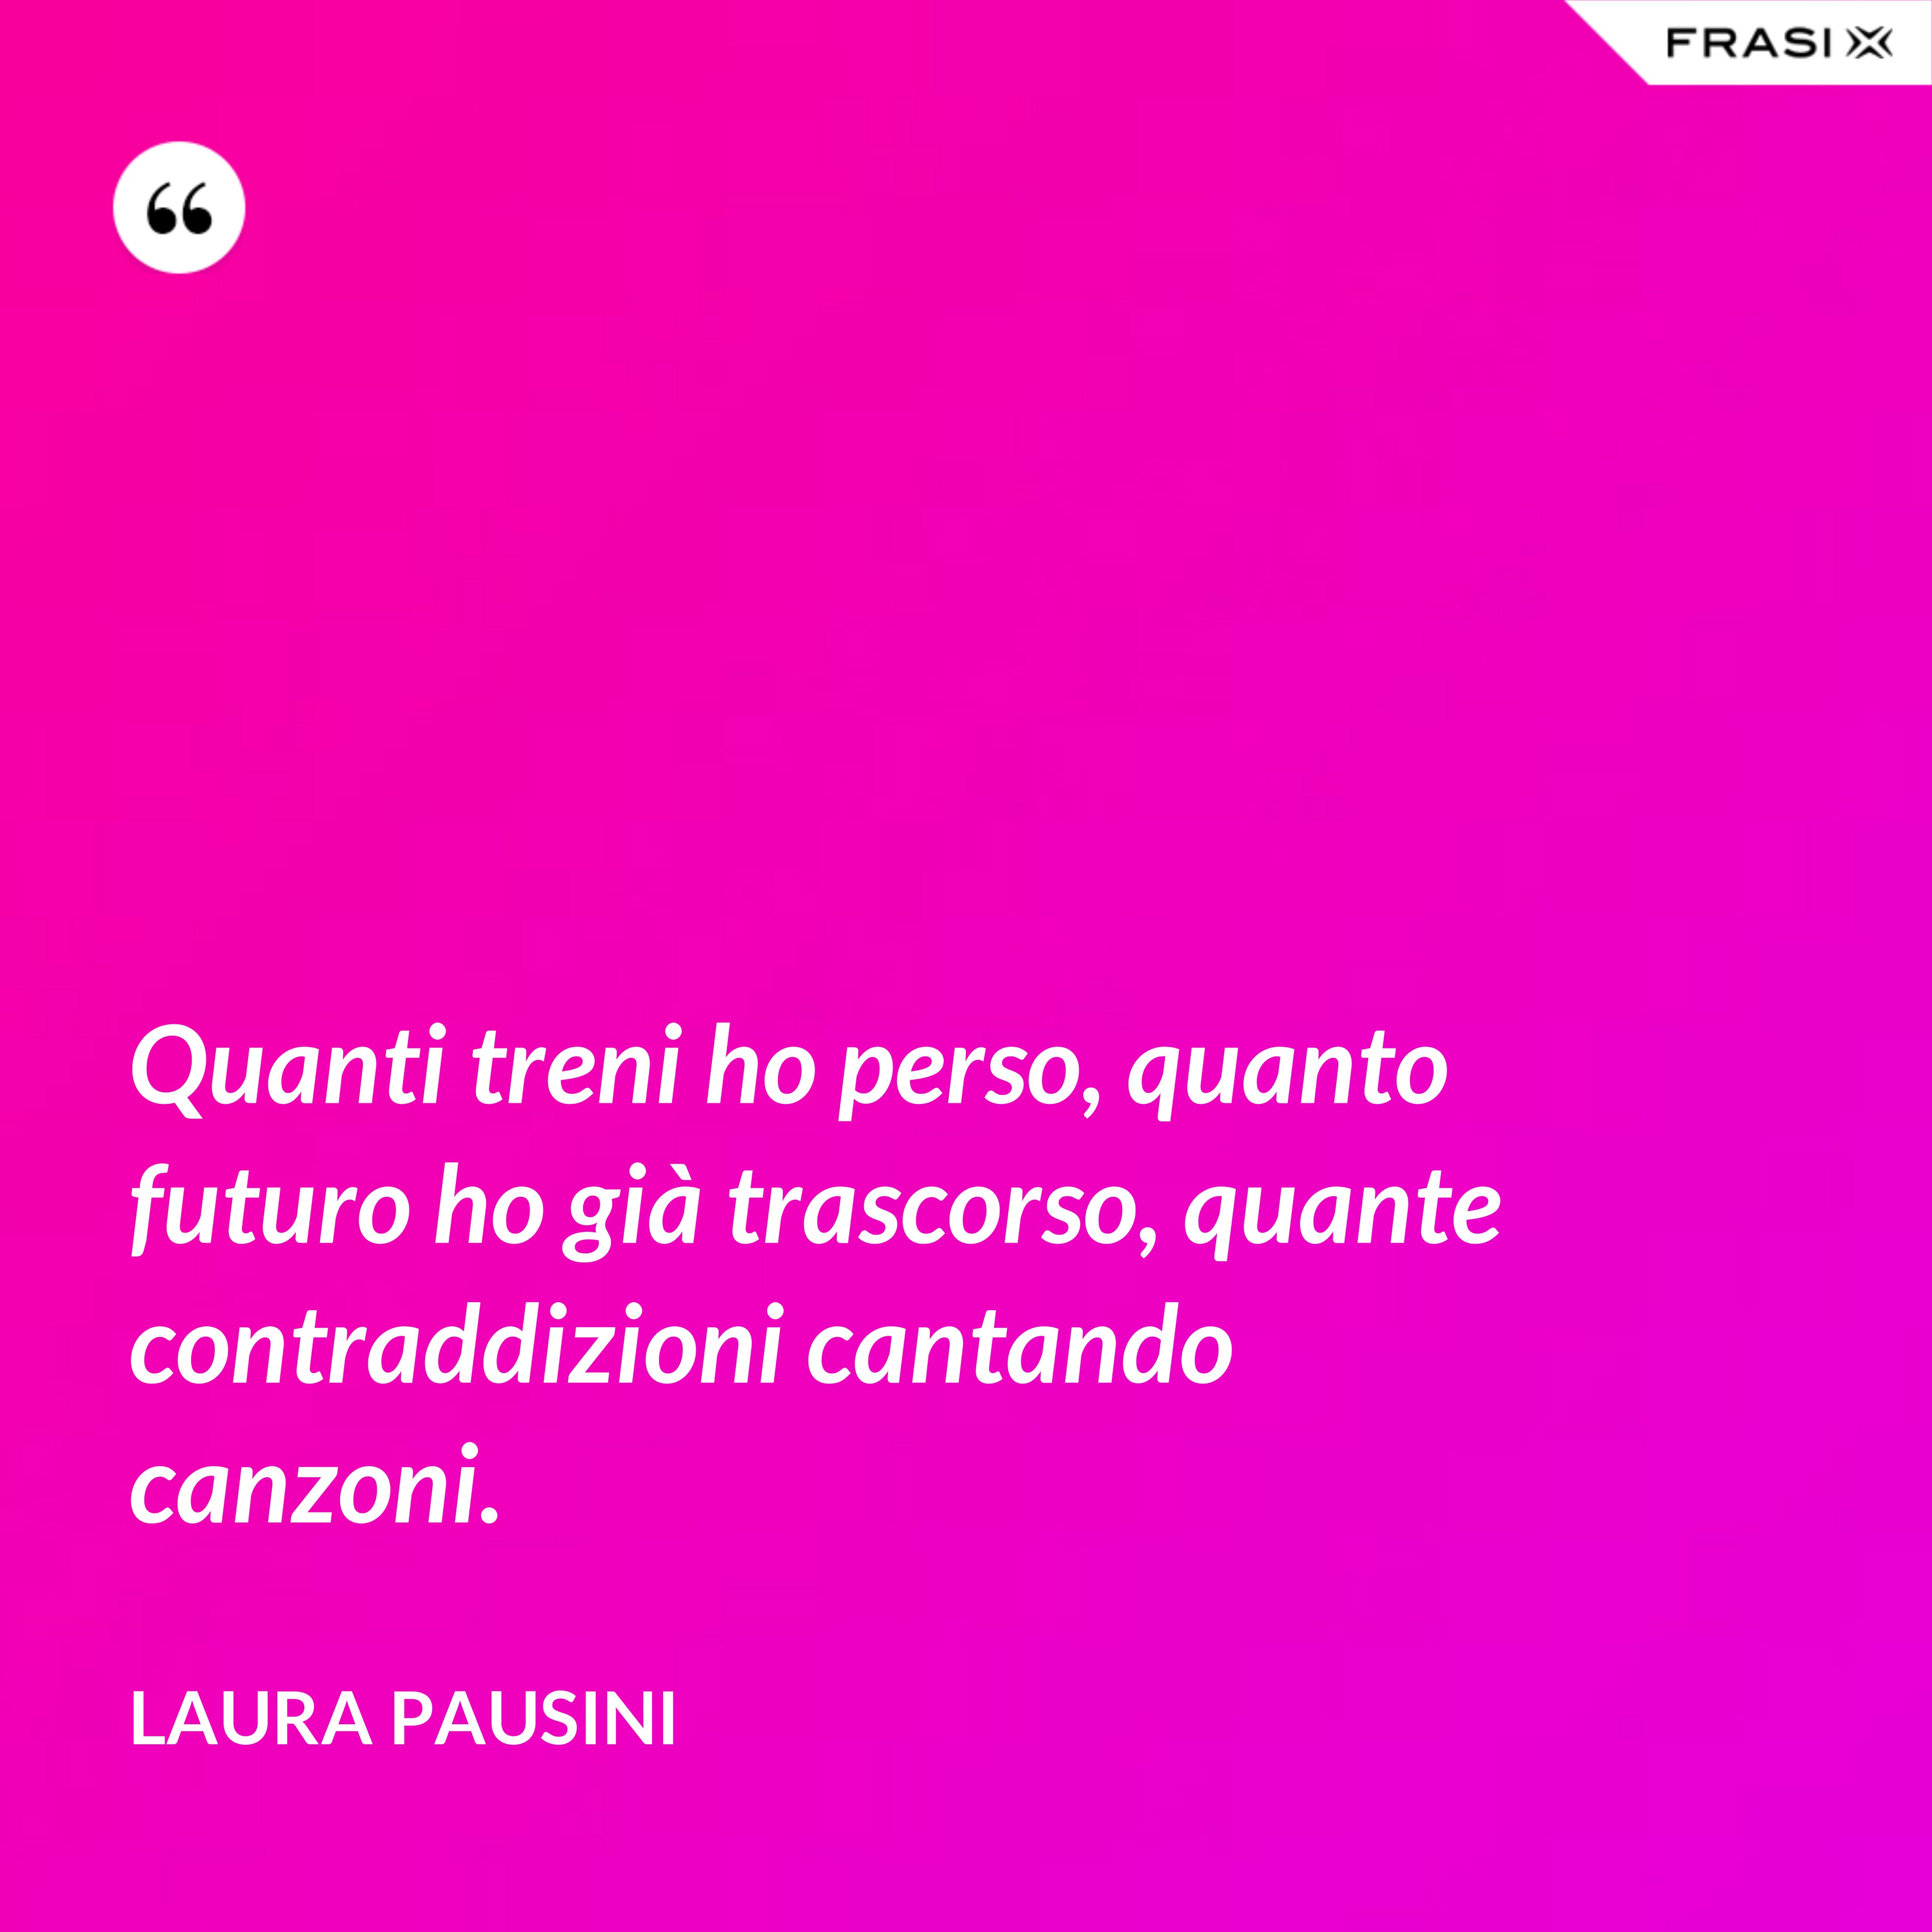 Quanti treni ho perso, quanto futuro ho già trascorso, quante contraddizioni cantando canzoni. - Laura Pausini